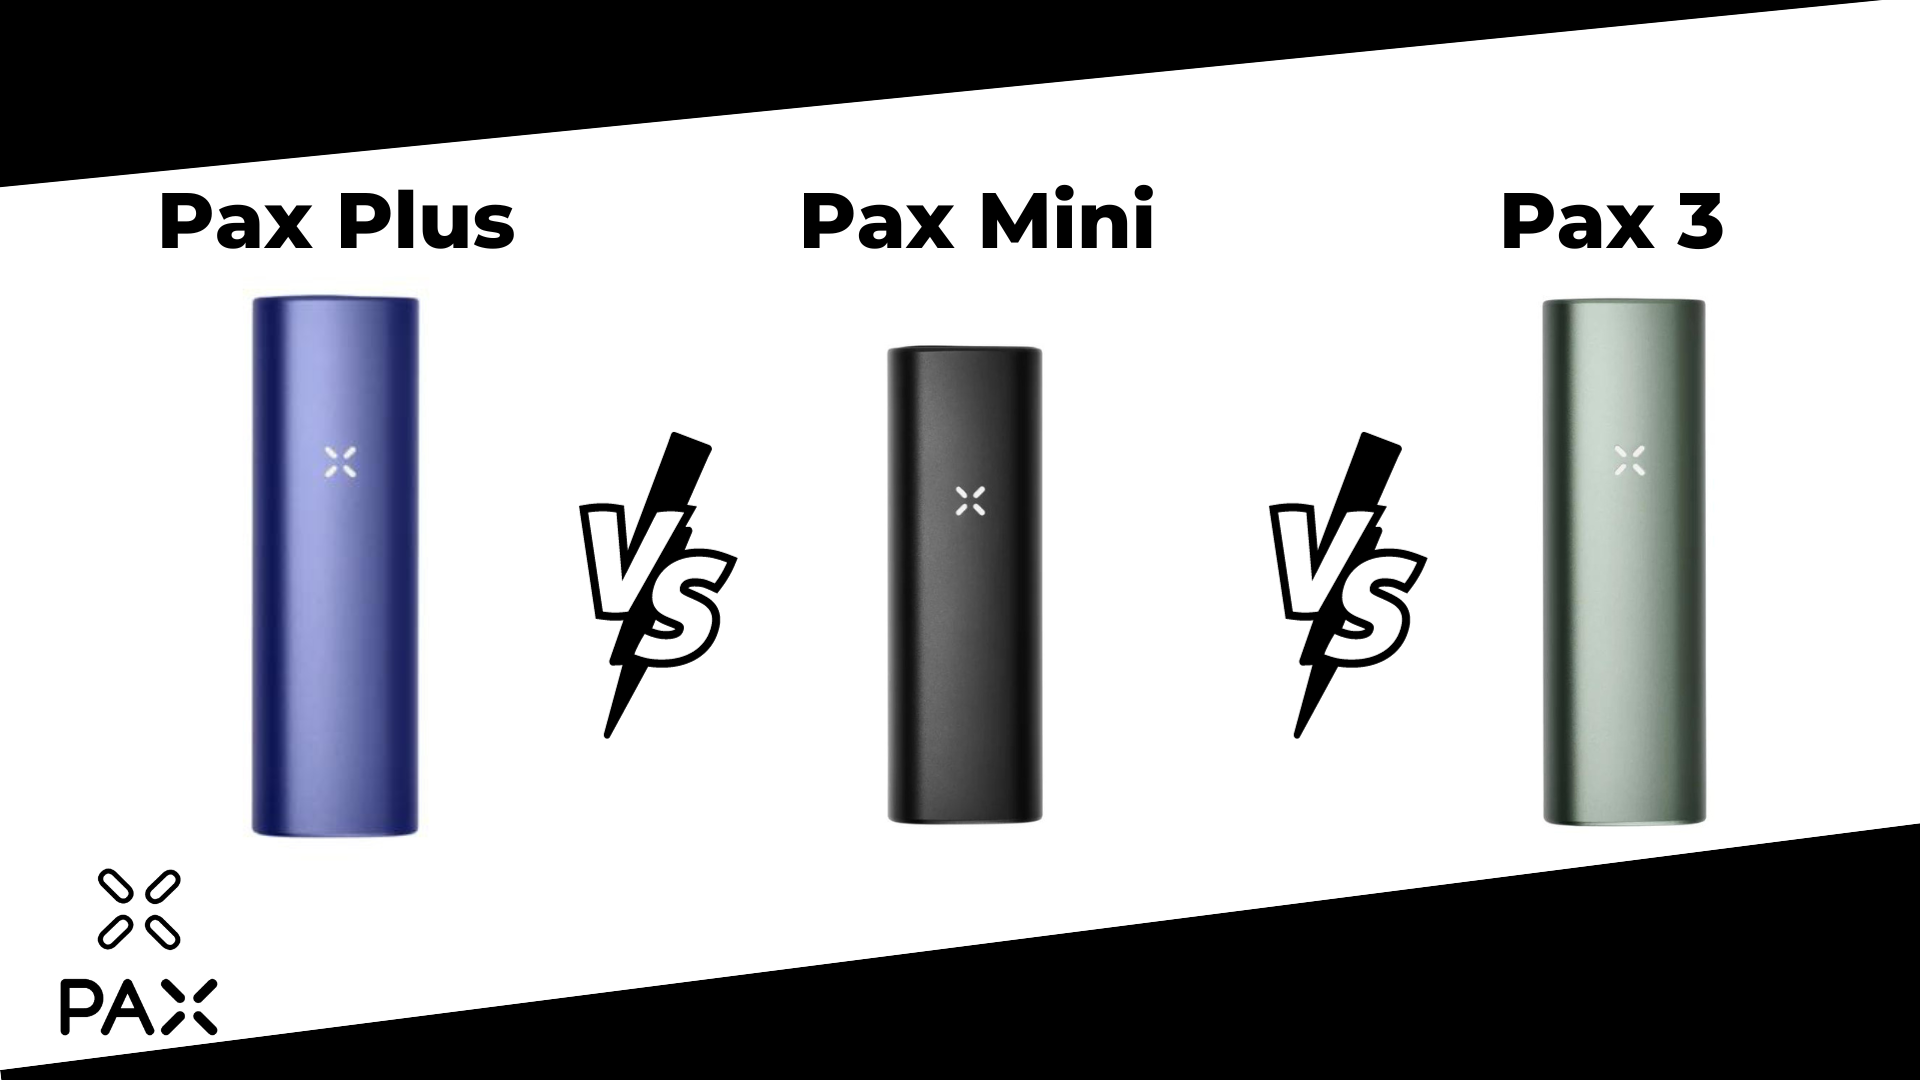 PAX Plus - Vaporizador portátil de gama alta 100% conducción